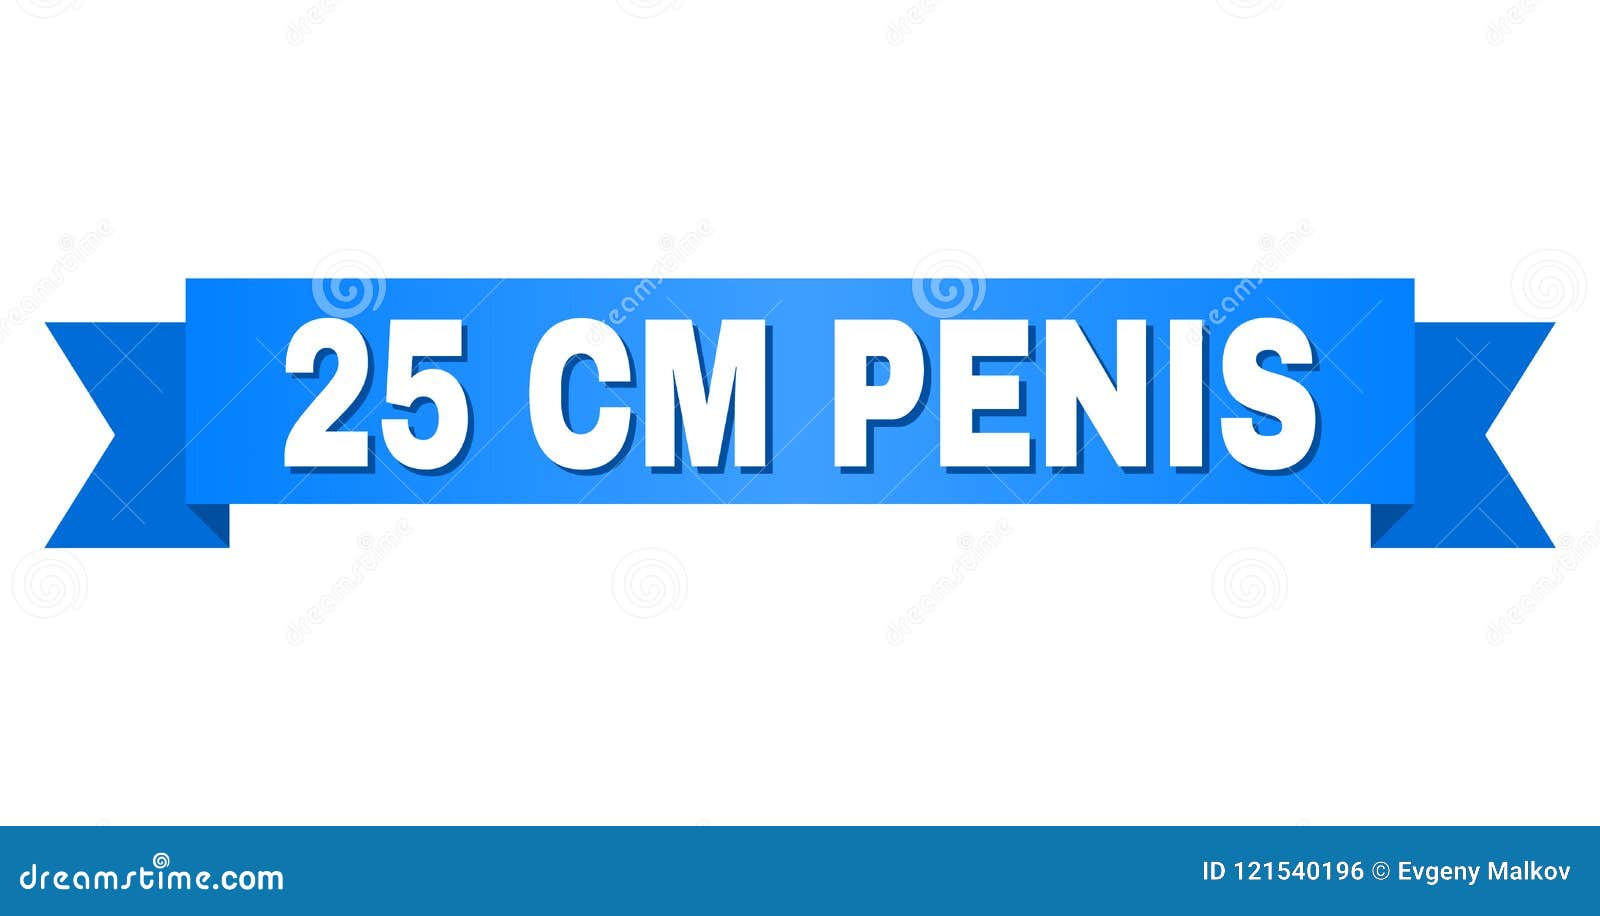 25 centimetri penis